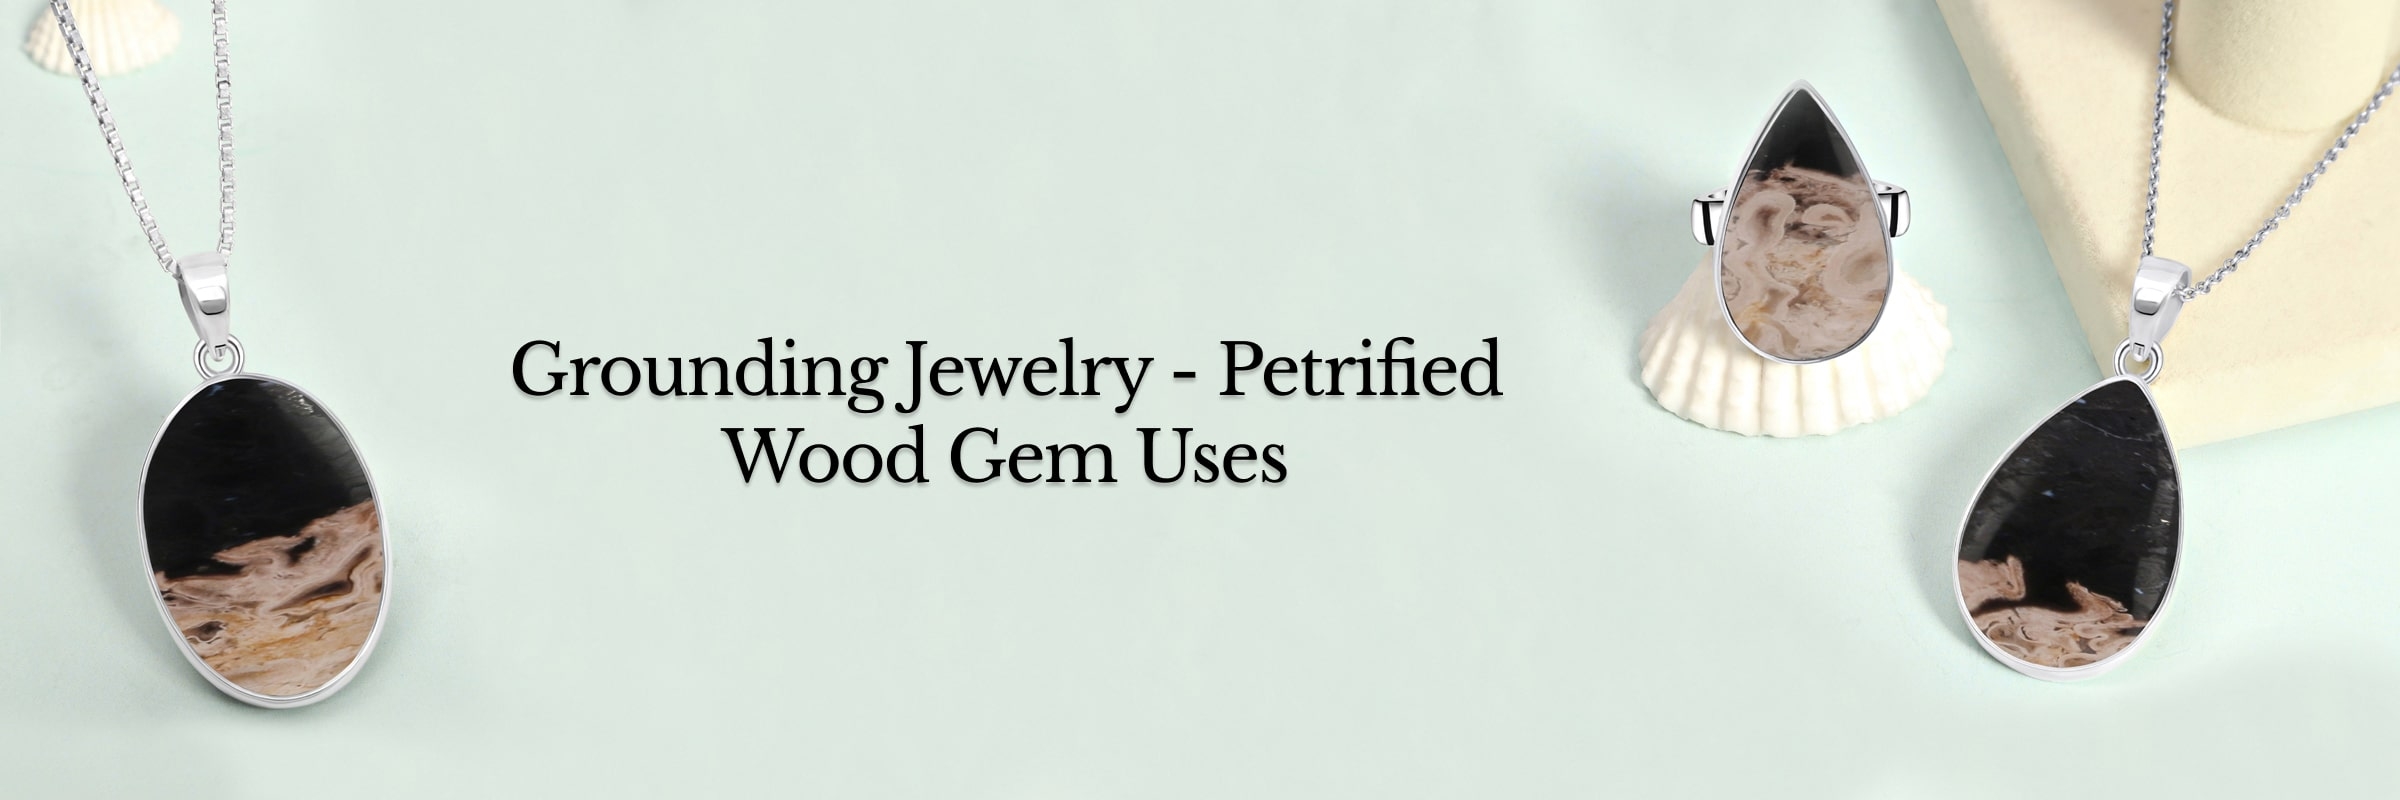 Uses of Petrified Wood Gemstone